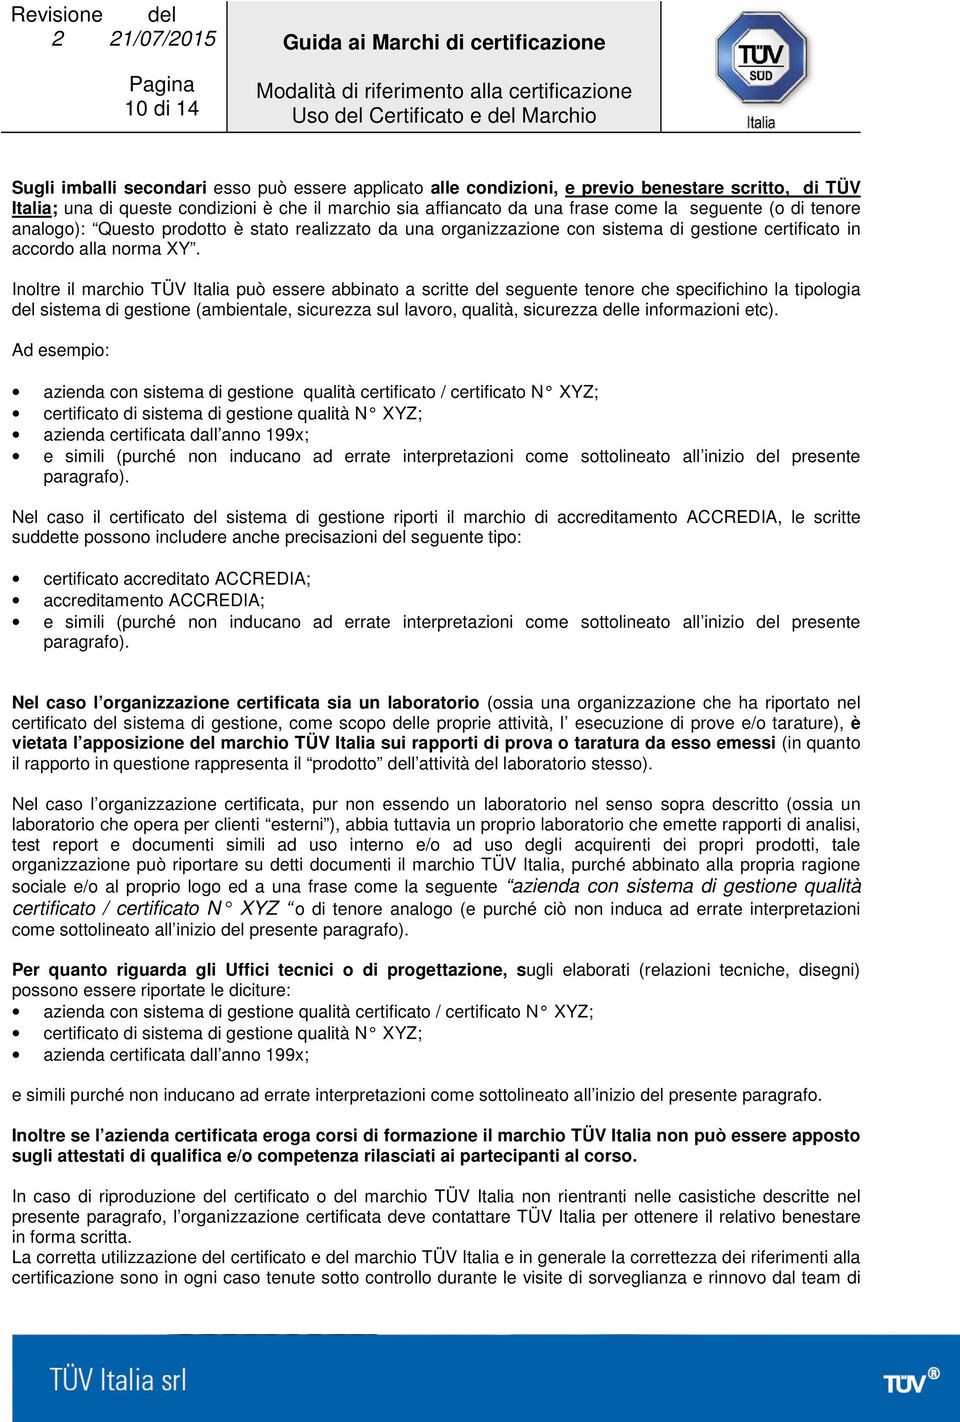 Inoltre il marchio TÜV Italia può essere abbinato a scritte del seguente tenore che specifichino la tipologia del sistema di gestione (ambientale, sicurezza sul lavoro, qualità, sicurezza delle